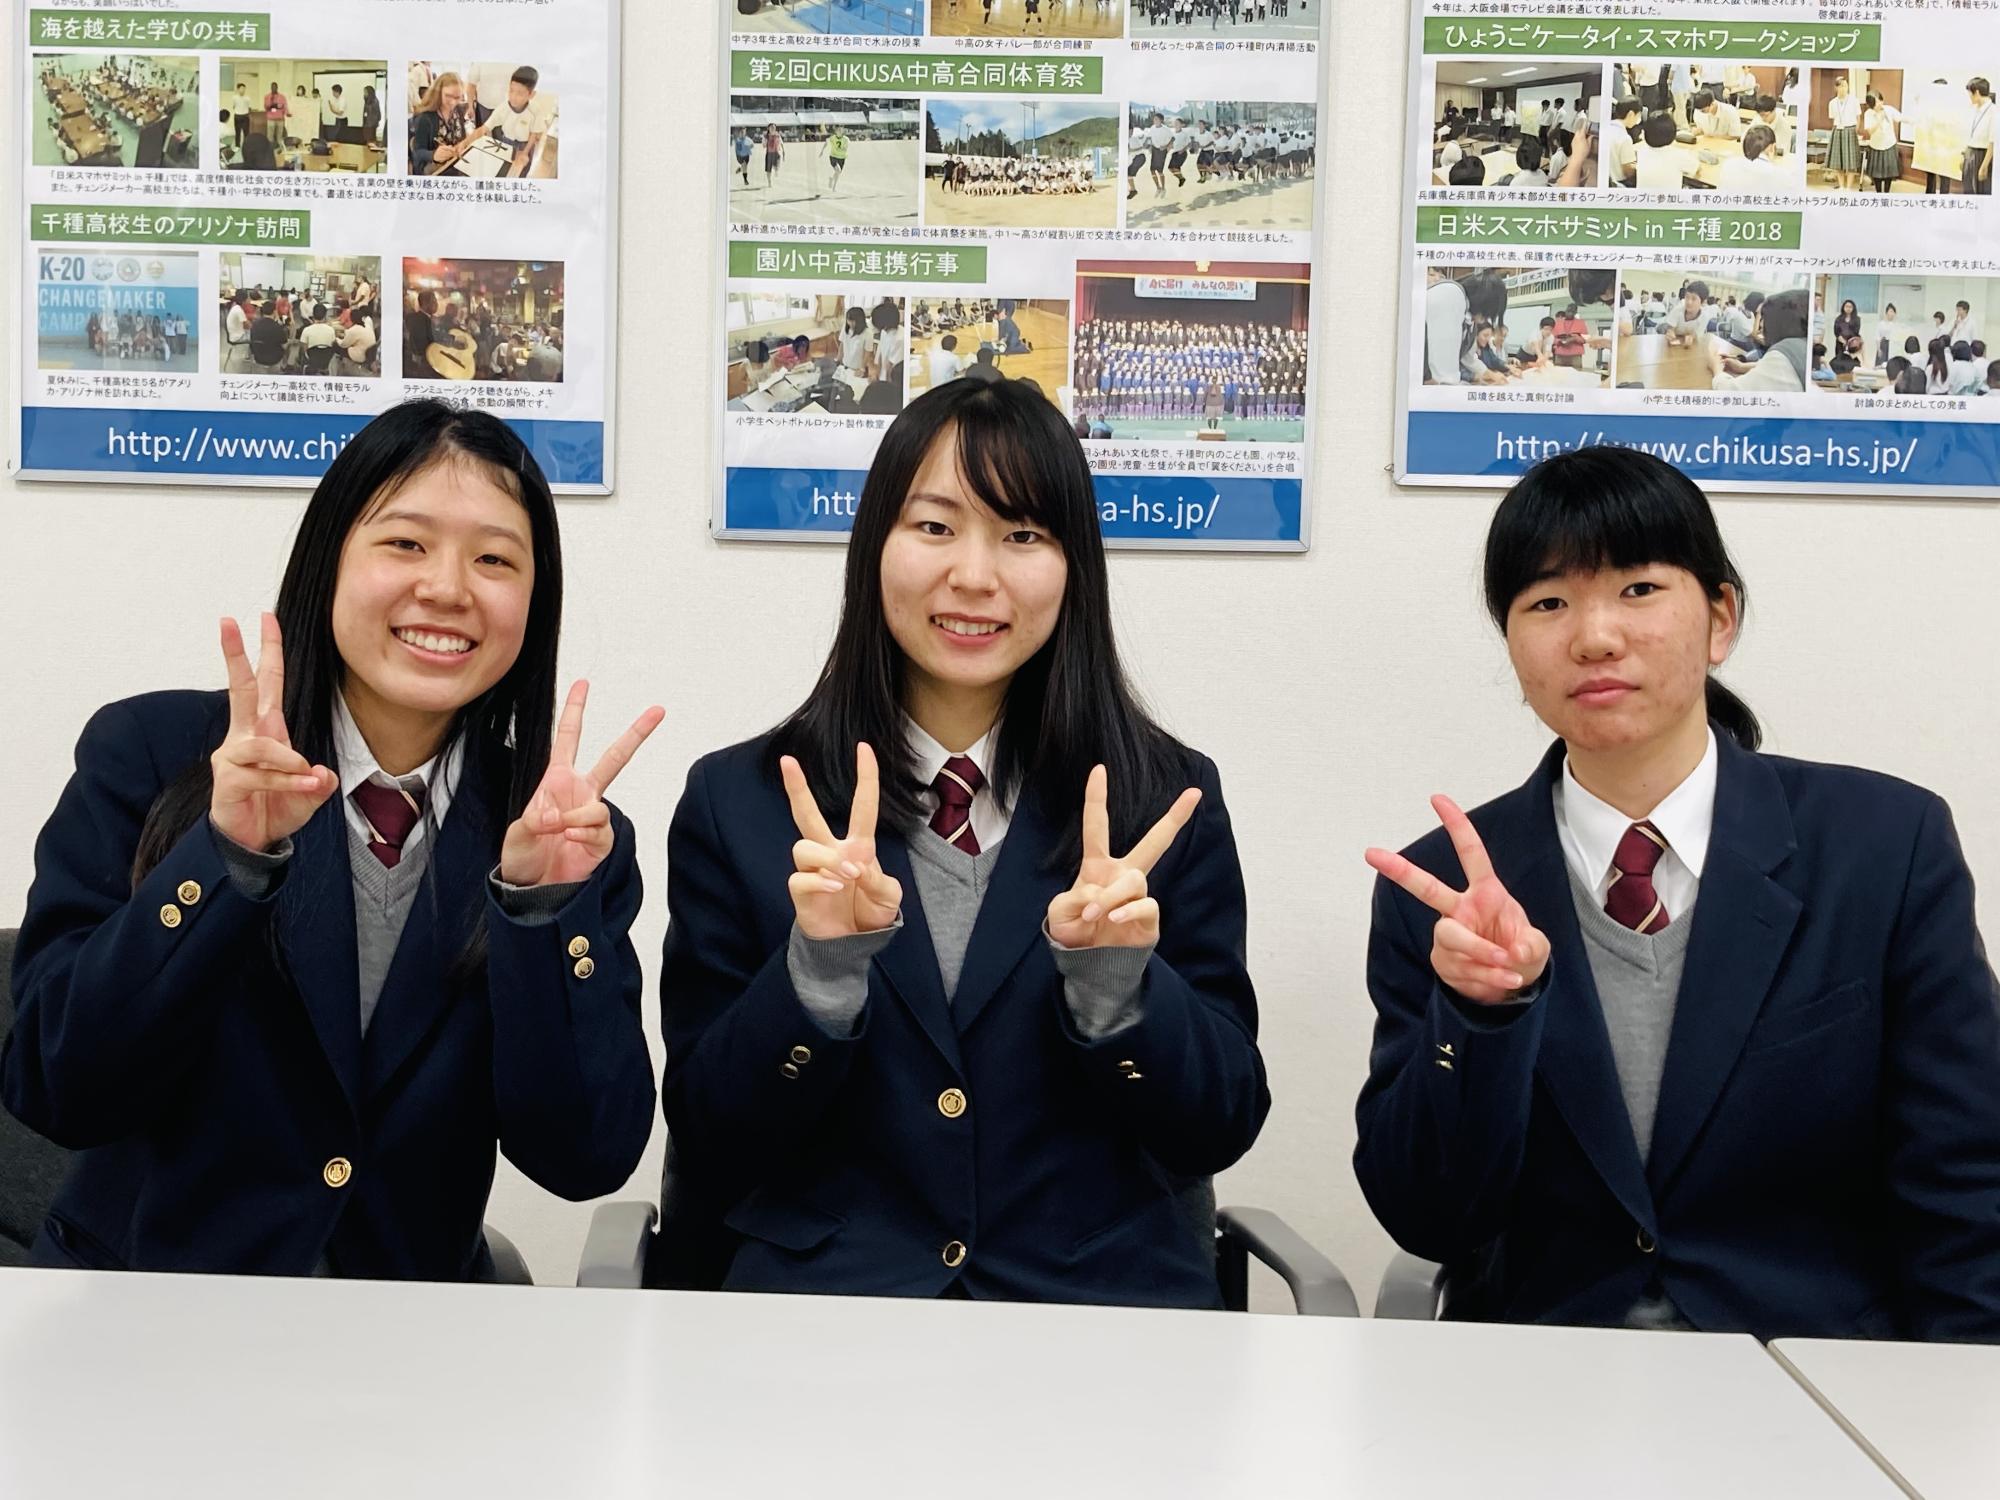 兵庫県総体スキー競技で学校対抗優勝を果たした千種高校スキー部女子部員3名の写真